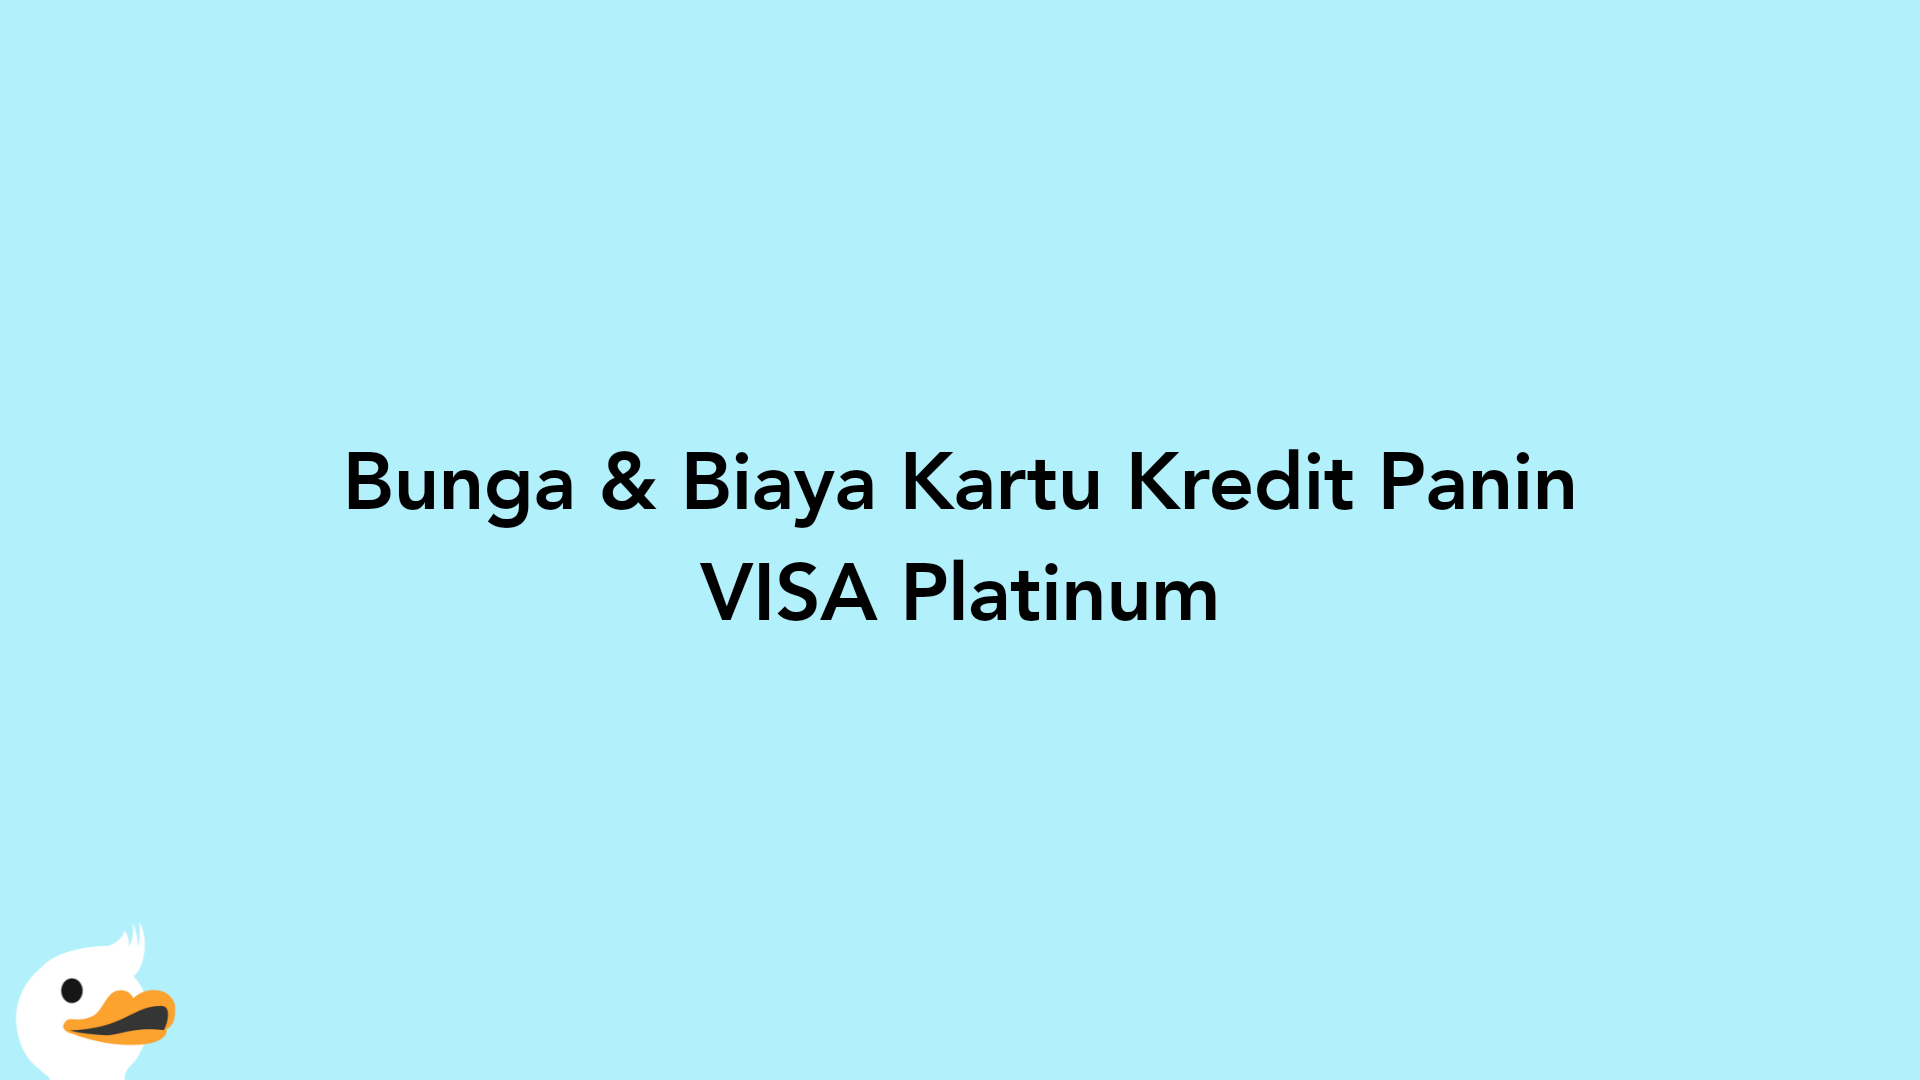 Bunga & Biaya Kartu Kredit Panin VISA Platinum